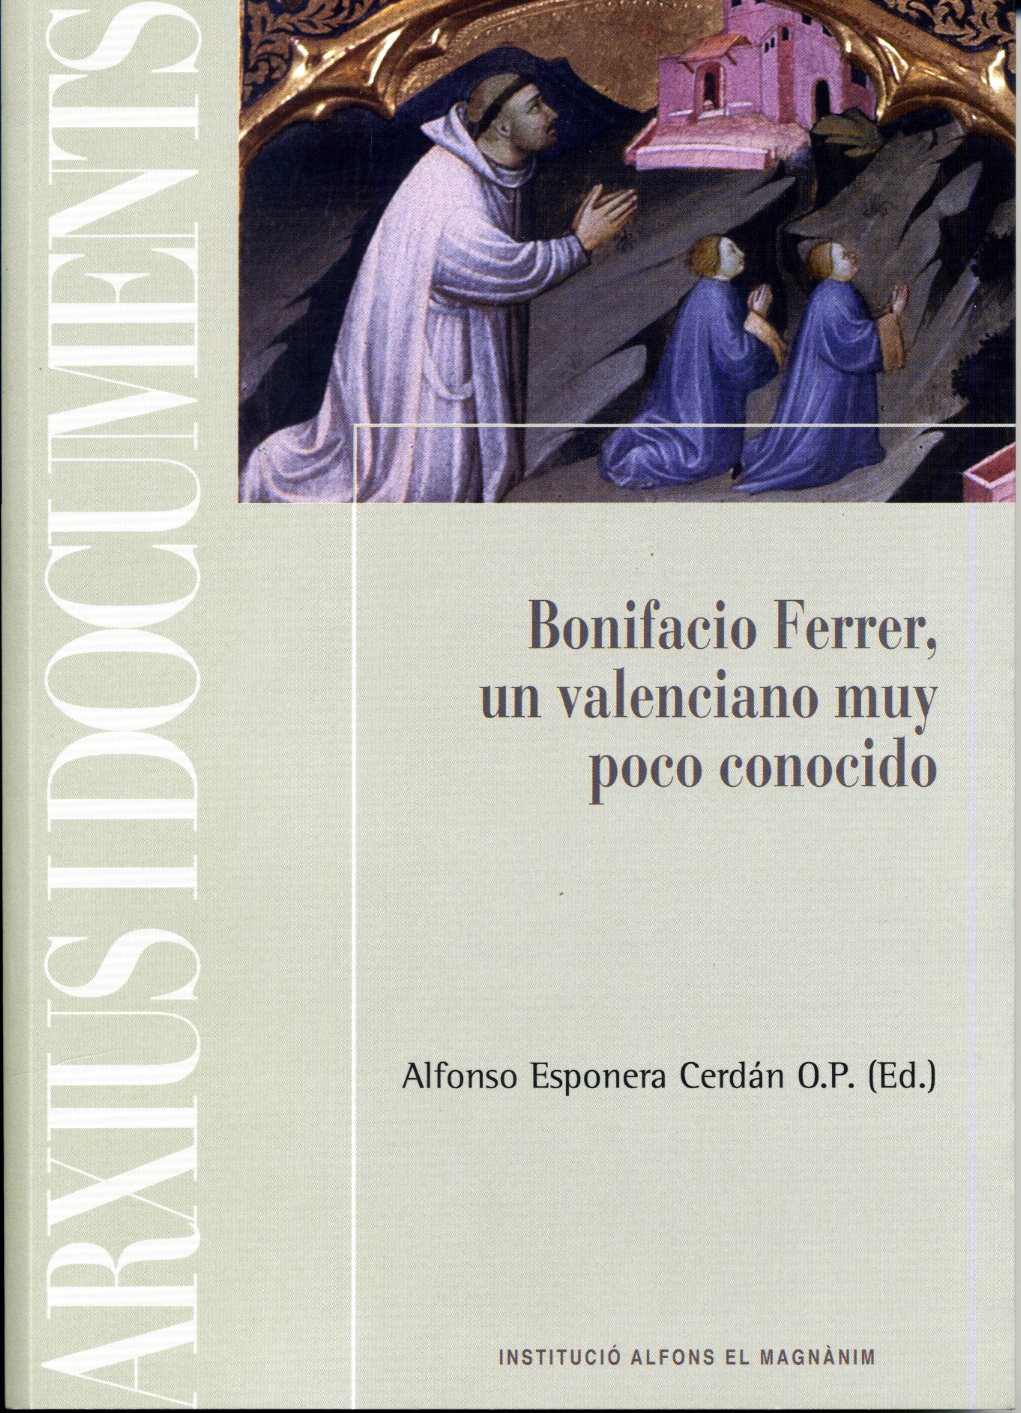 Seiscientos años de la muerte de Bonifacio Ferrer